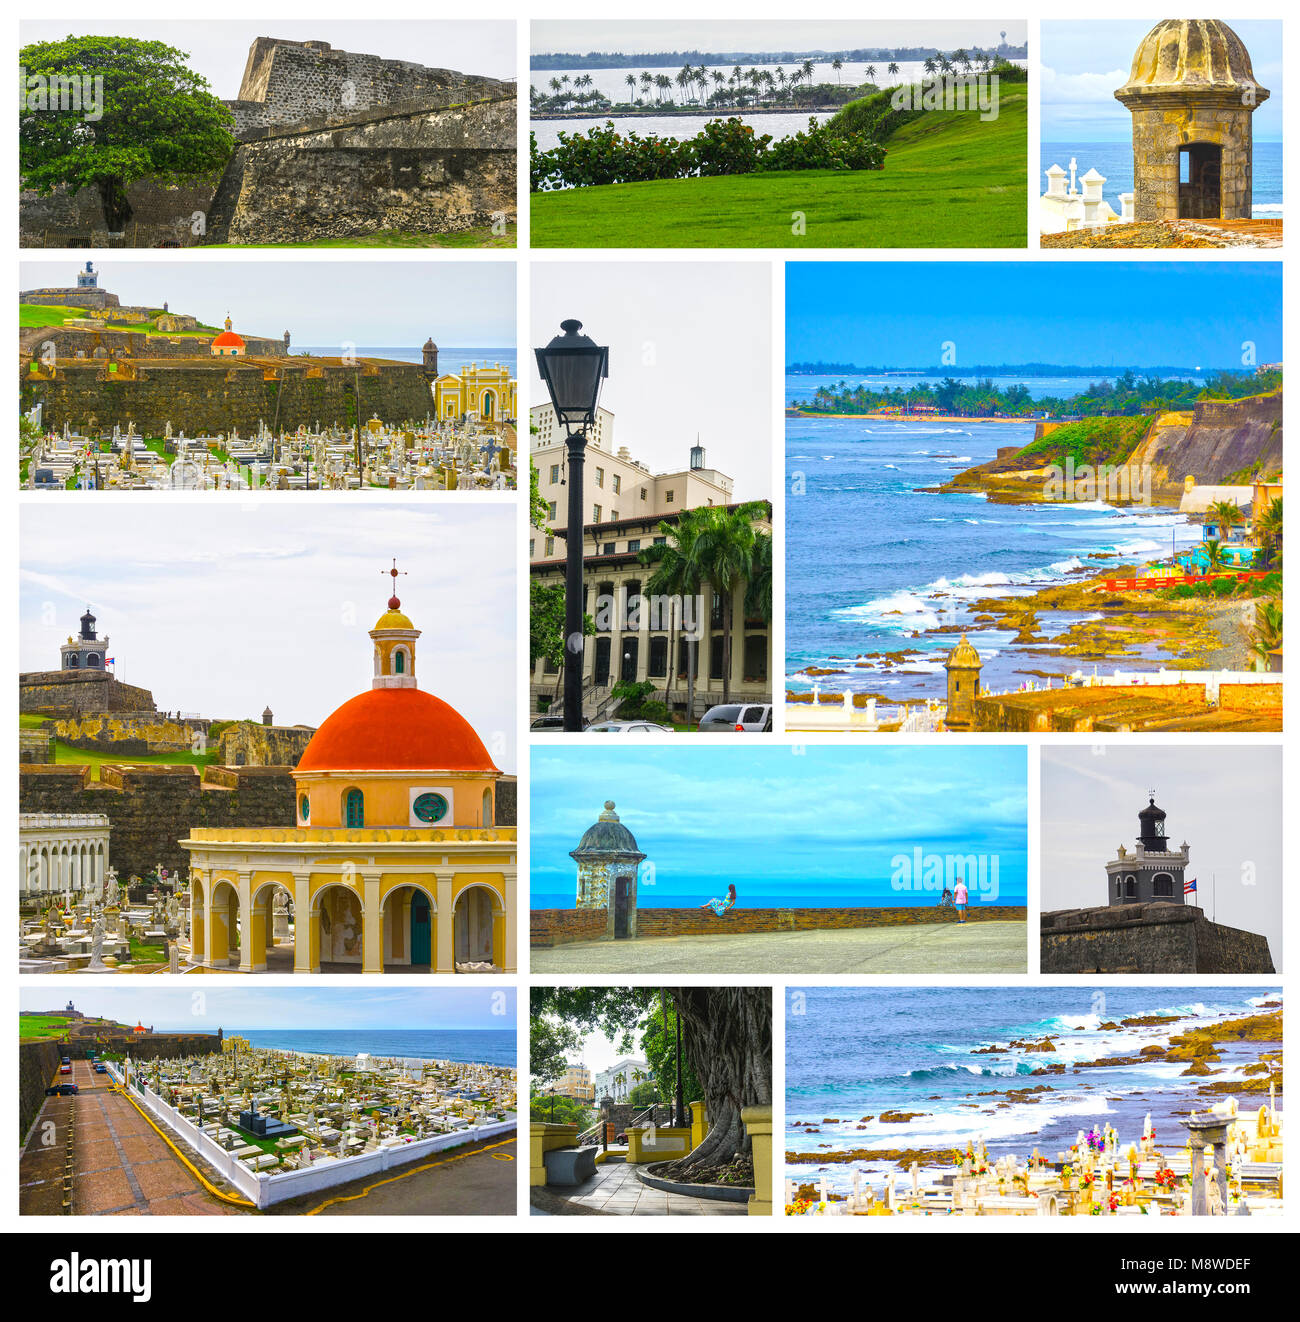 L'ancien cimetière de San Juan à Puerto Rico et ciel gris. Collage Banque D'Images